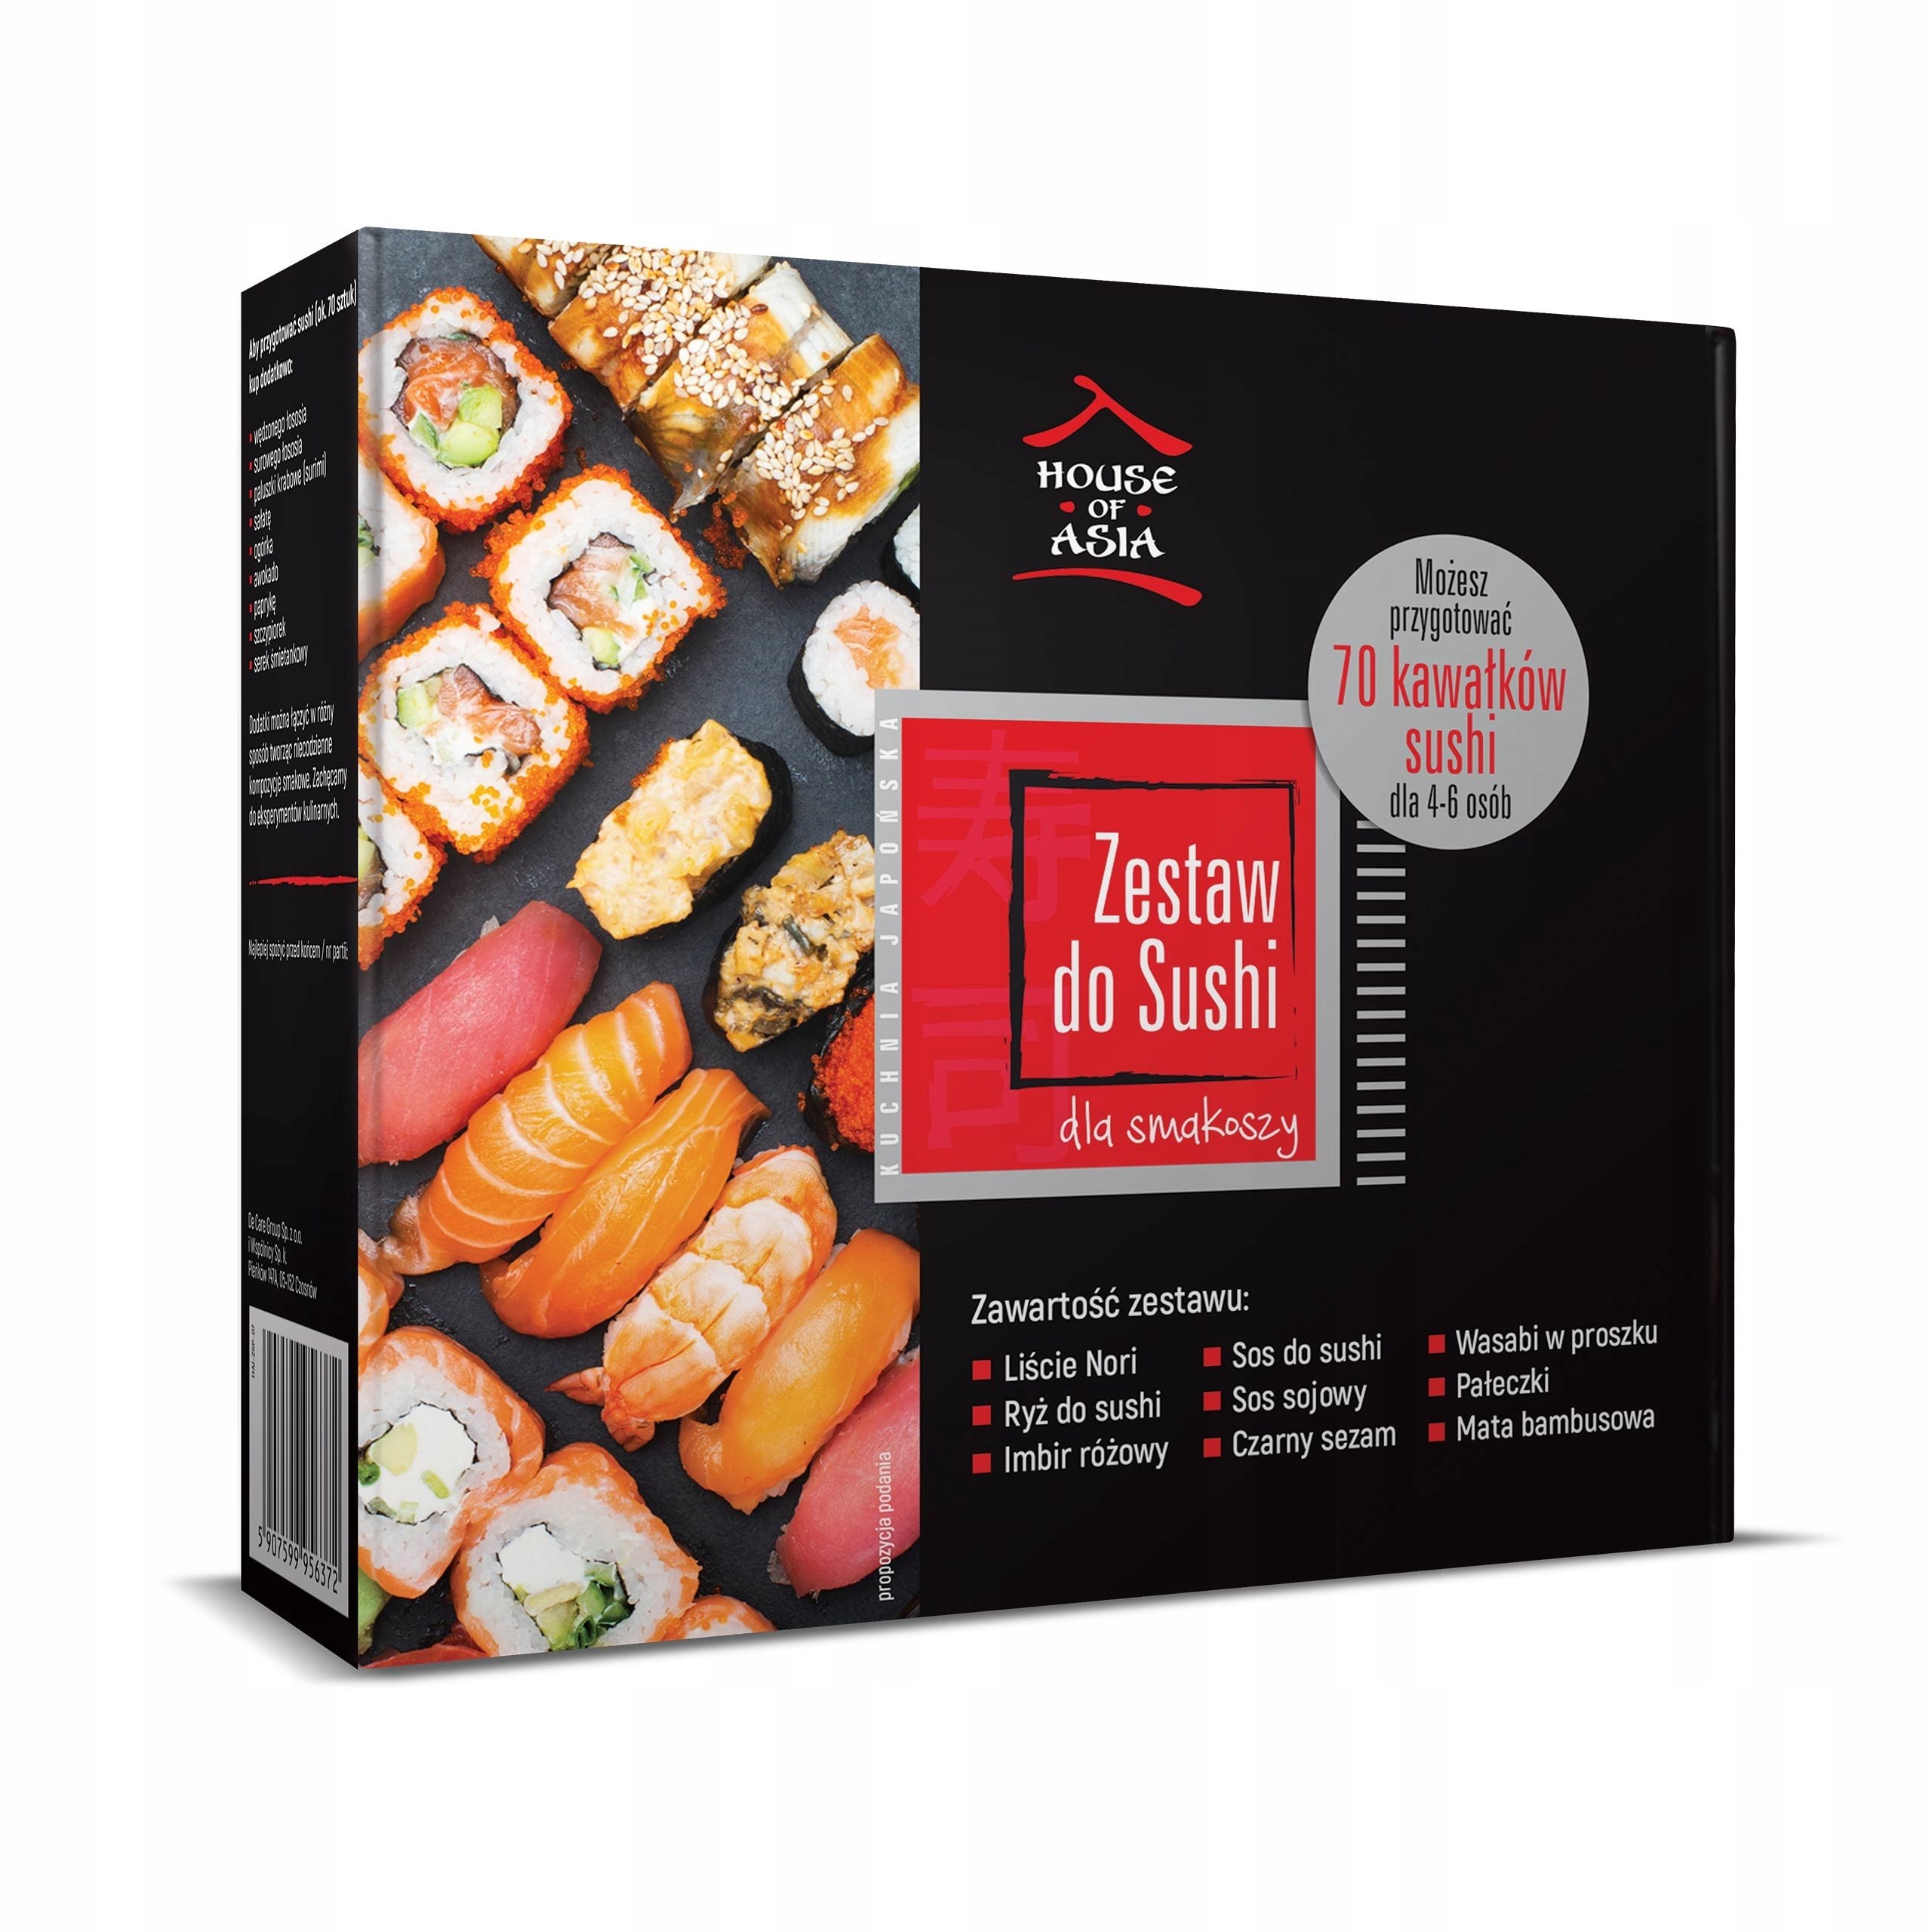 Zestaw do sushi Premium dla 4-6 osób 1.1 kg Kod producenta 5907599956372